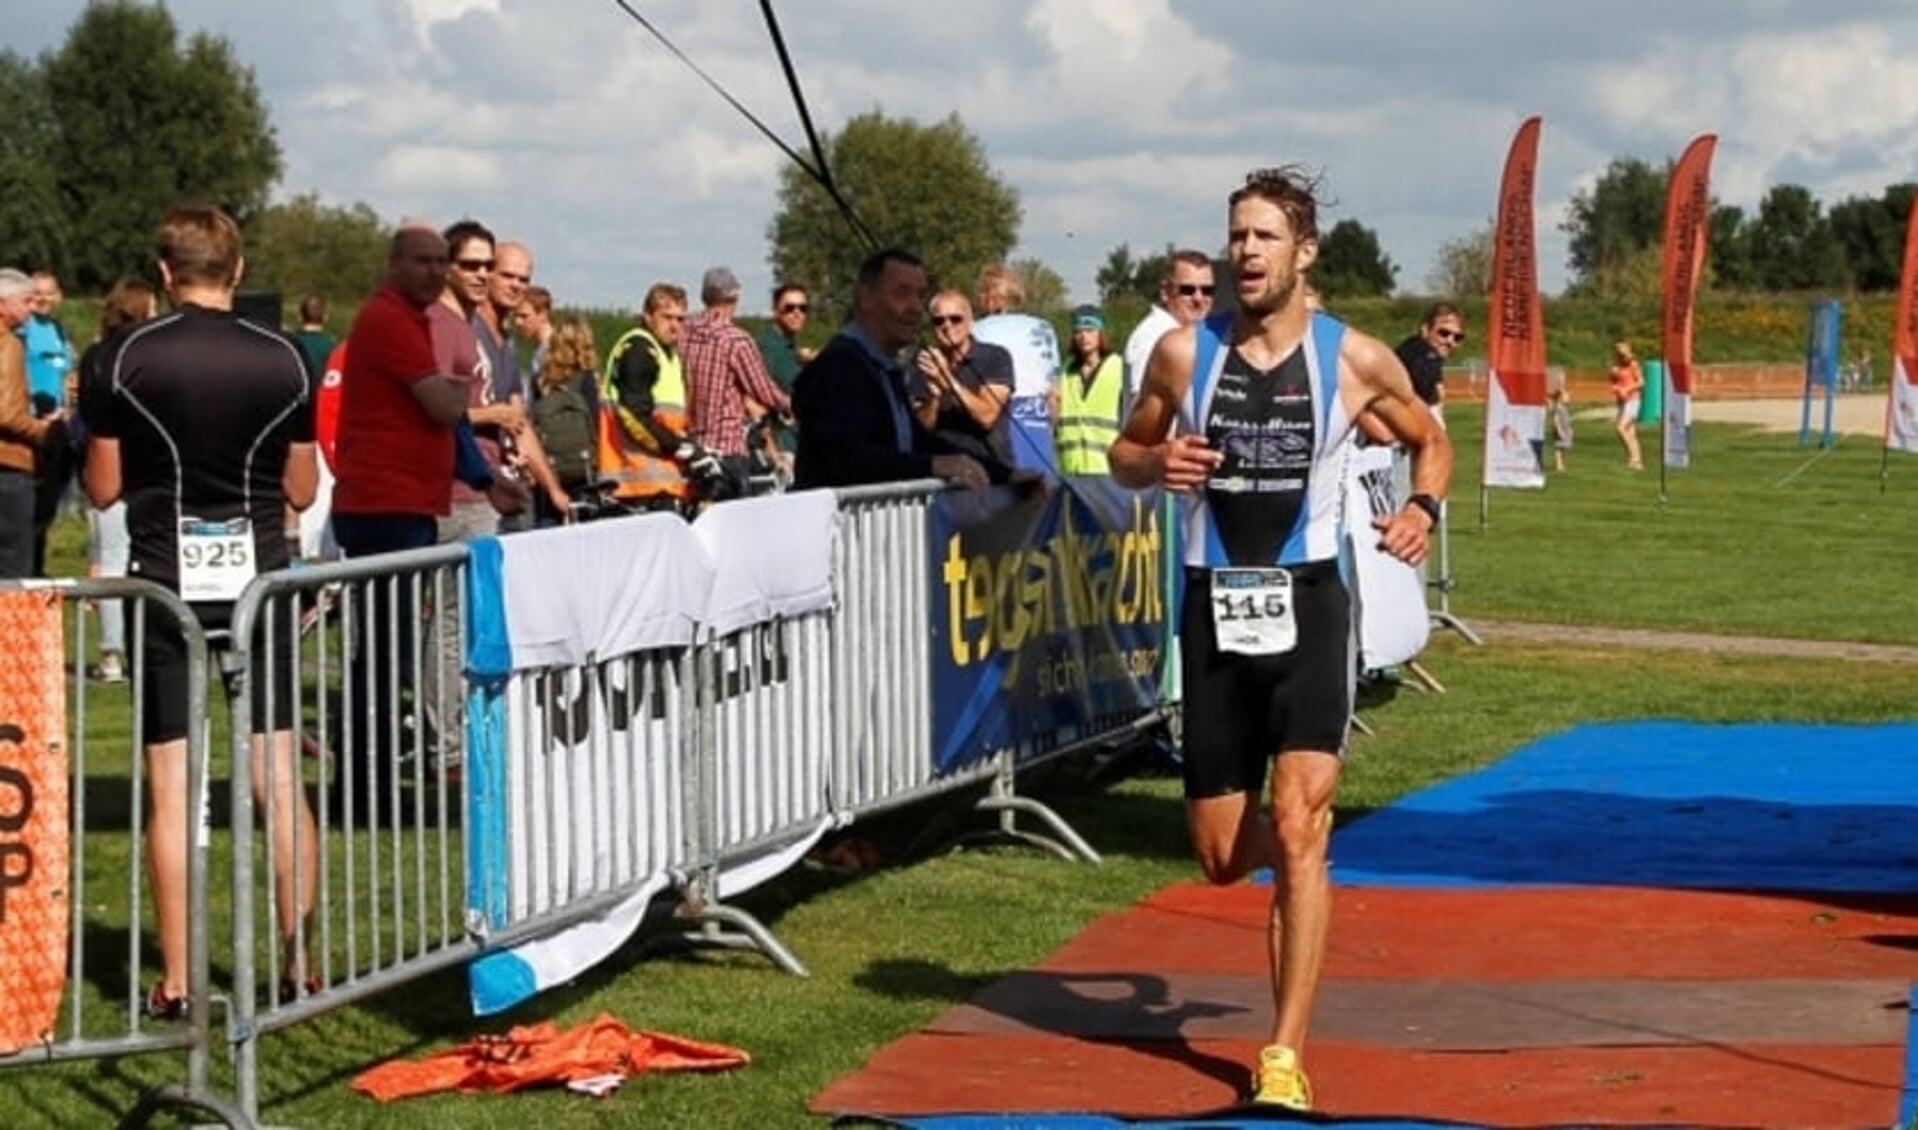 De laatste meters van Han-Peter Lucas in de door hem gewonnen Triathlon Zwolle van 2017. 